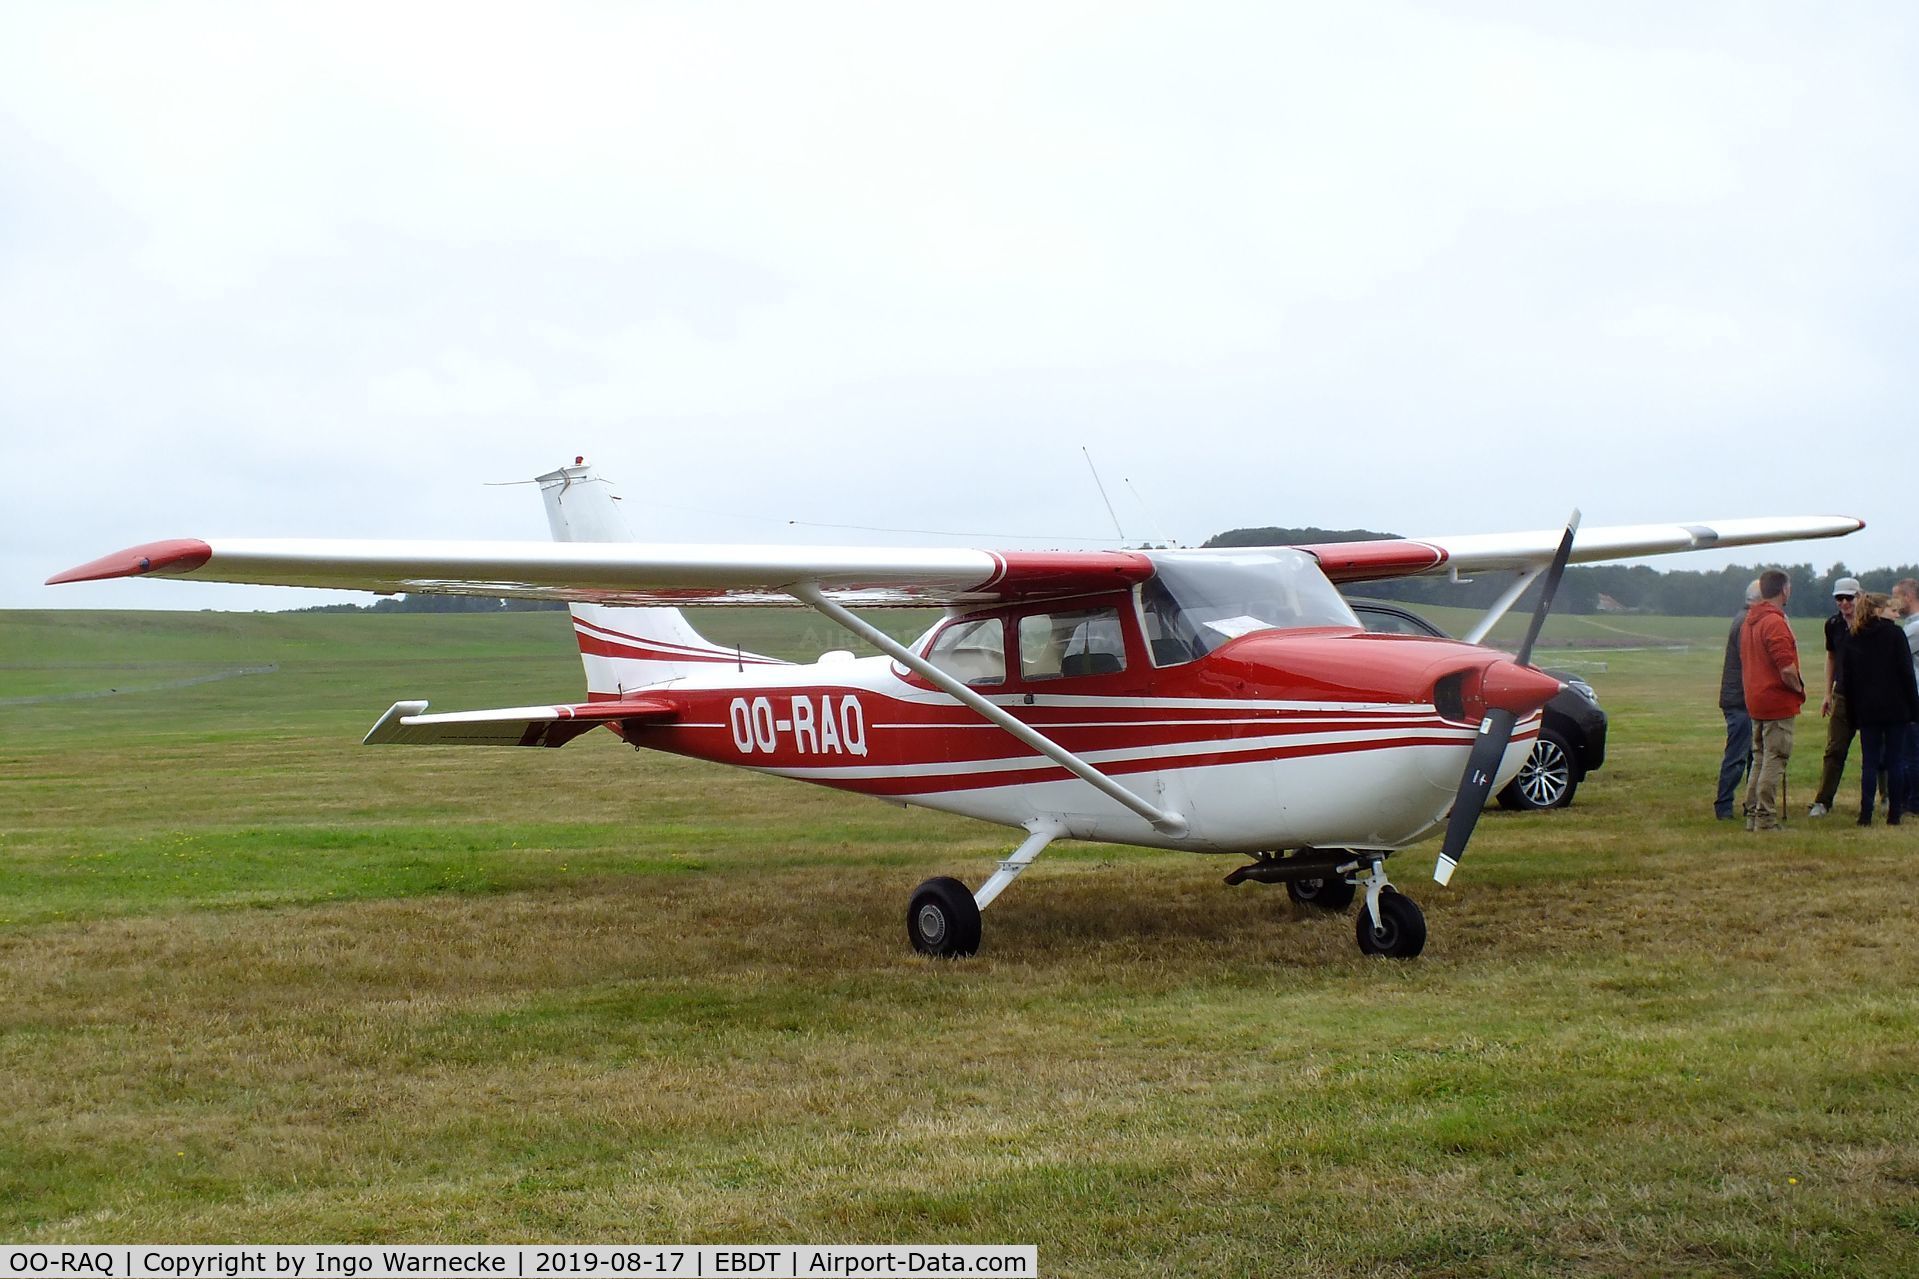 OO-RAQ, 1971 Reims F172K Skyhawk C/N 0788, Cessna (Reims) F172K at the 2019 Fly-in at Diest/Schaffen airfield